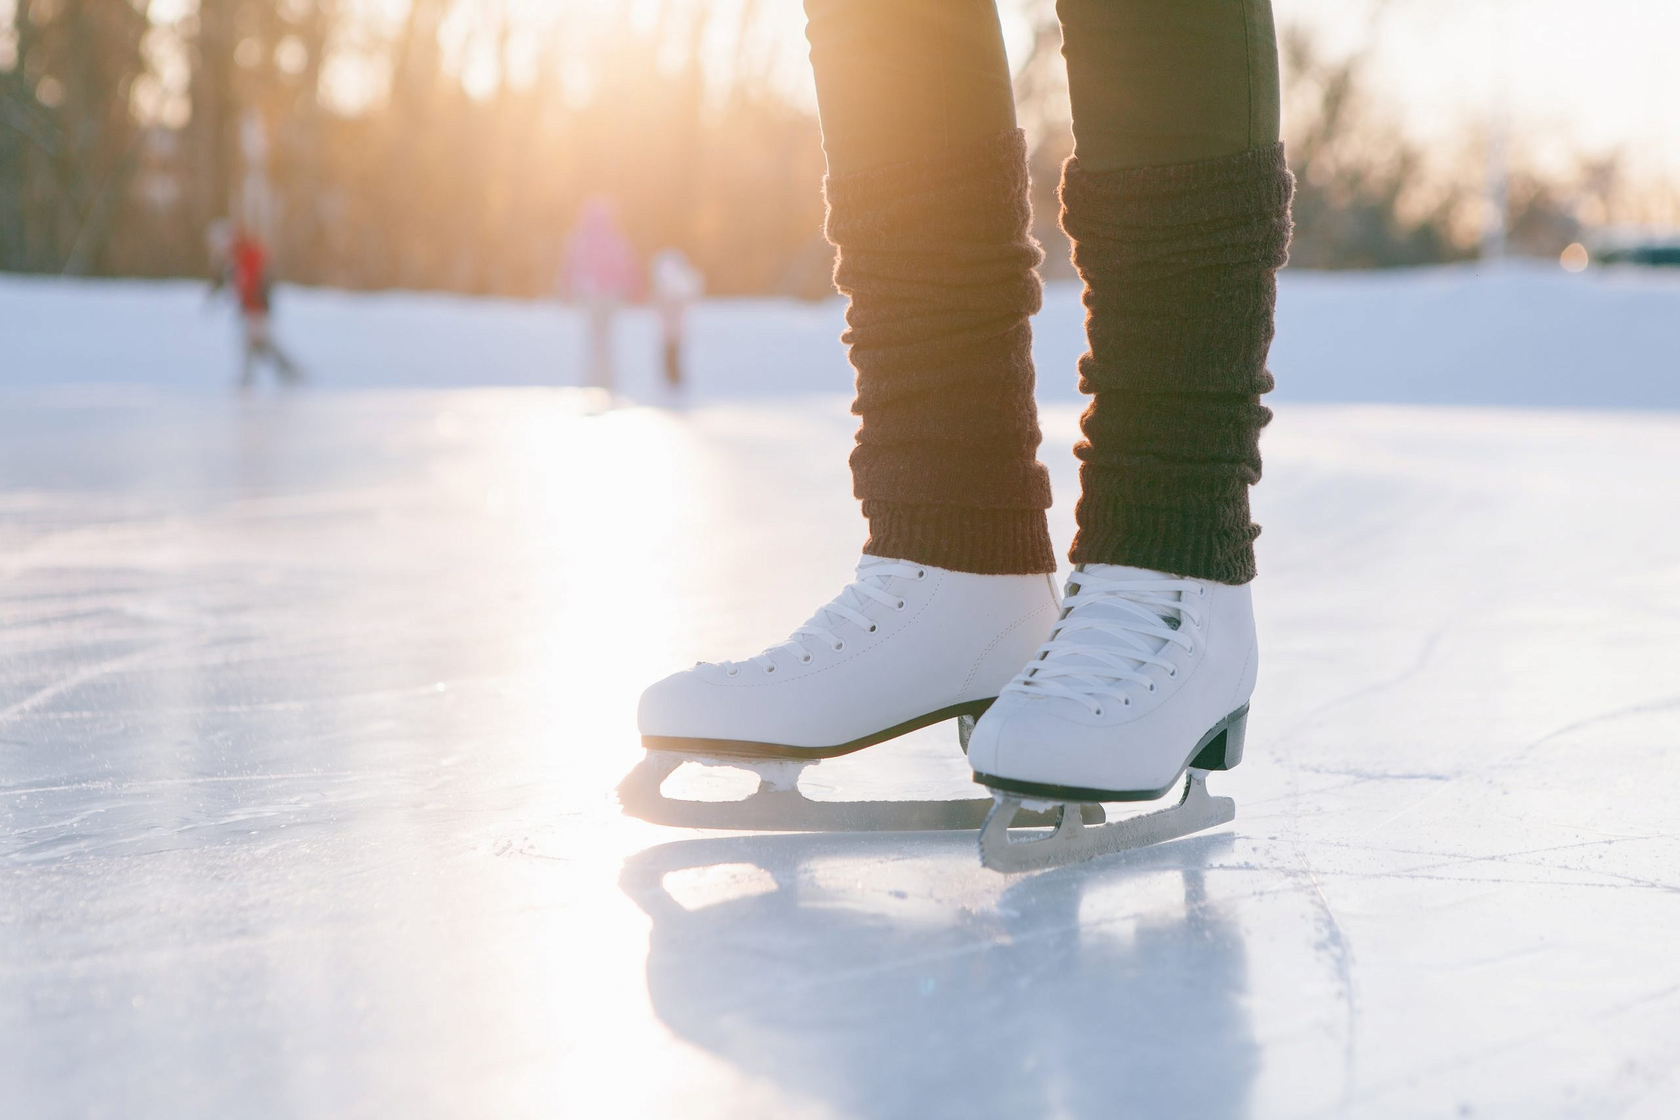 Лед коньки каток. Айс скейтинг. Каток коньки. Ноги в коньках. Ноги на катке.